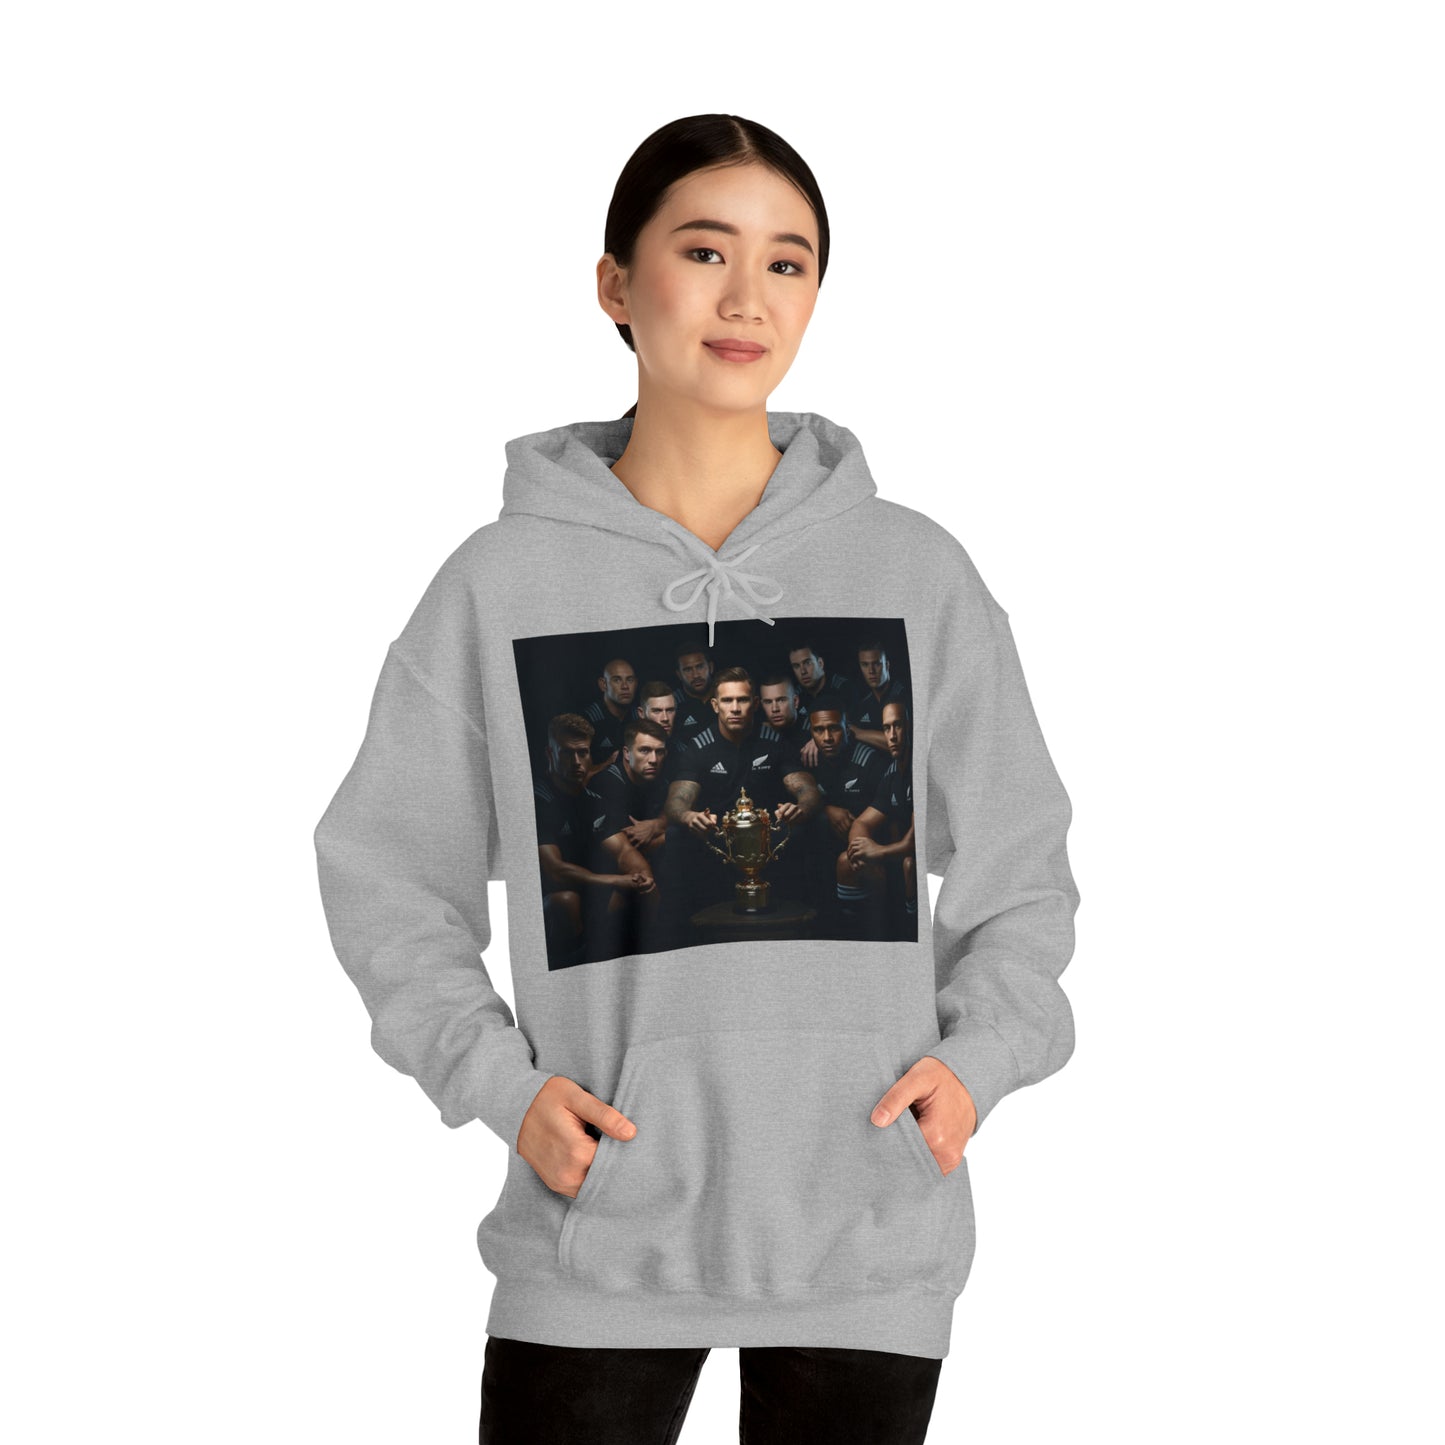 All Blacks Winners Photoshoot - light hoodies